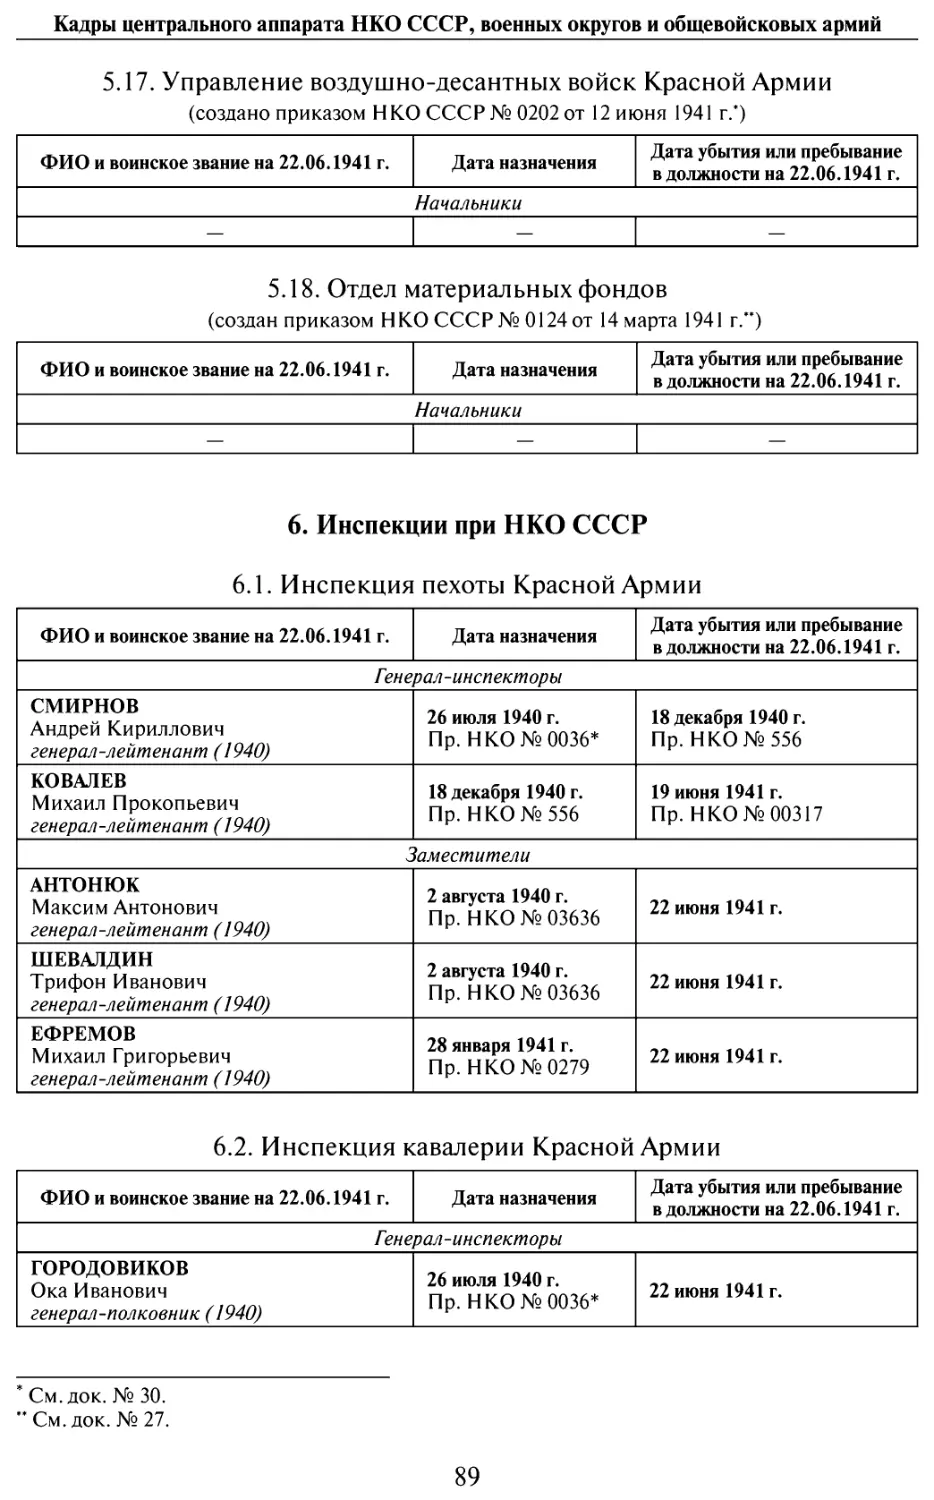 6. Инспекции при НКО СССР